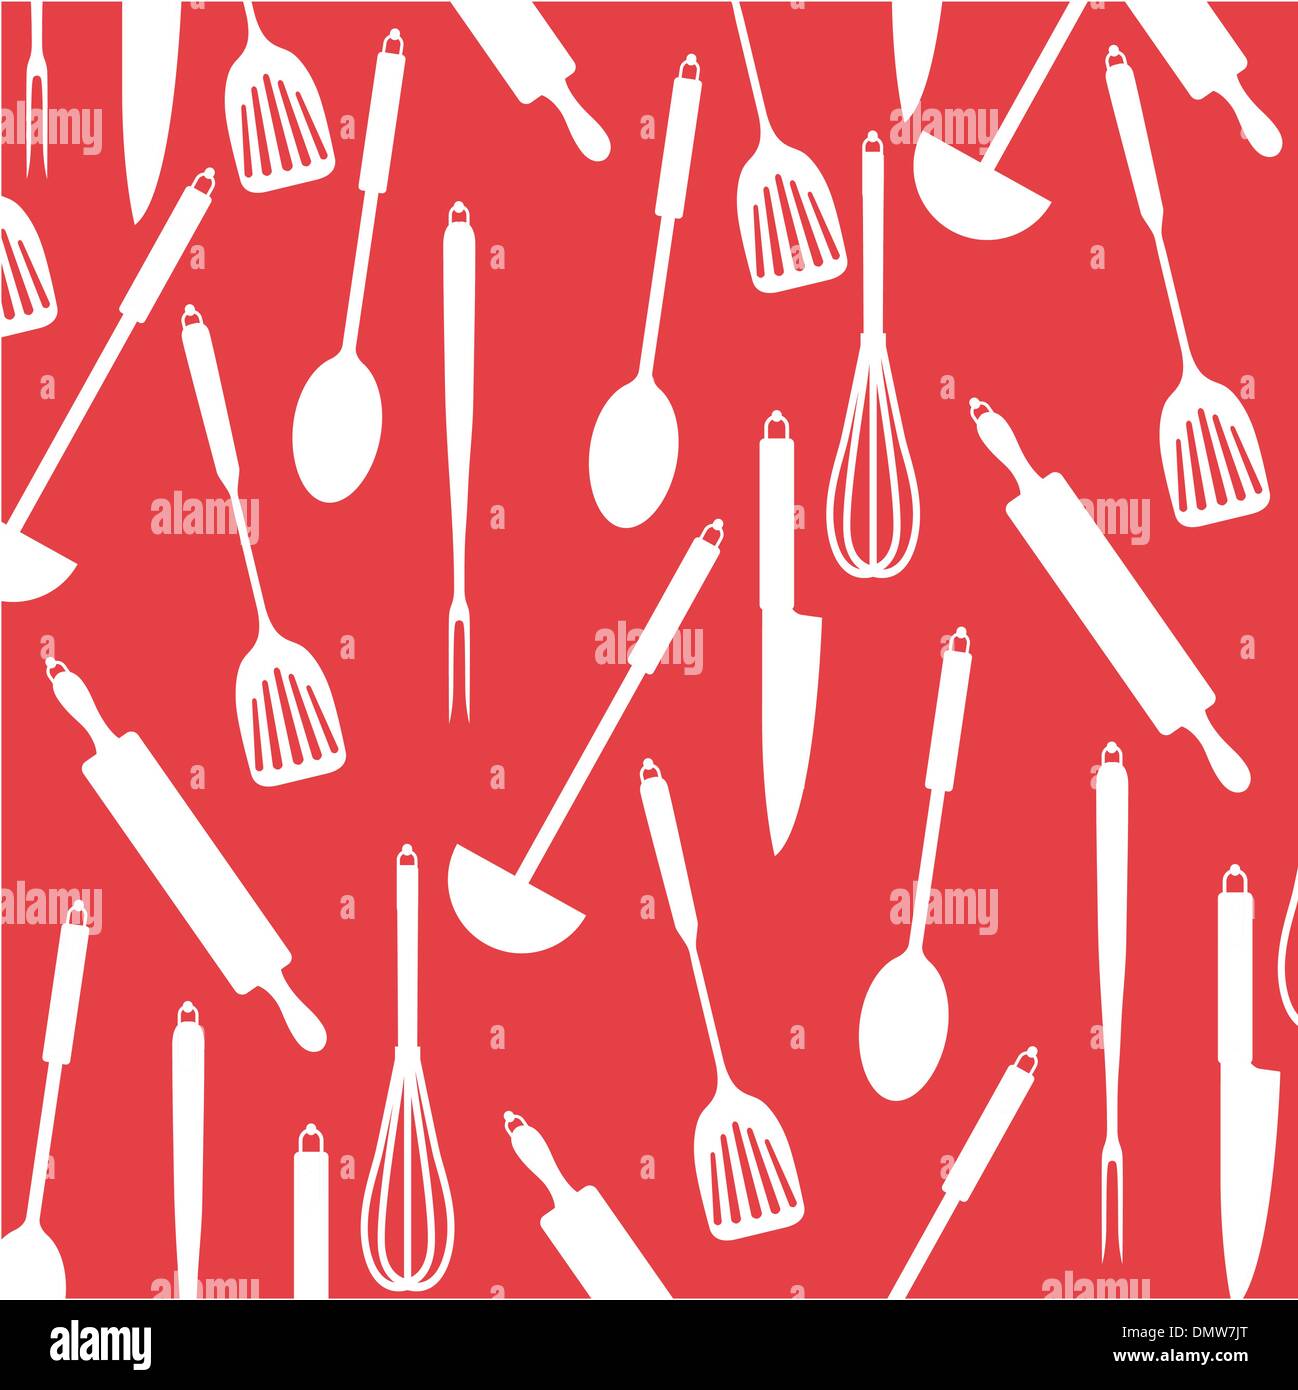 Dụng cụ nhà bếp trên nền đỏ: Bếp là nơi đem lại yêu thương và hạnh phúc của gia đình, và đương nhiên nhà bếp cũng là nơi tập trung những dụng cụ cần thiết. Vì vậy, hình ảnh dụng cụ trên nền đỏ sẽ khiến bạn nghĩ lại đến công dụng cũng như vẻ đẹp của những vật dụng mà mình hay sử dụng.